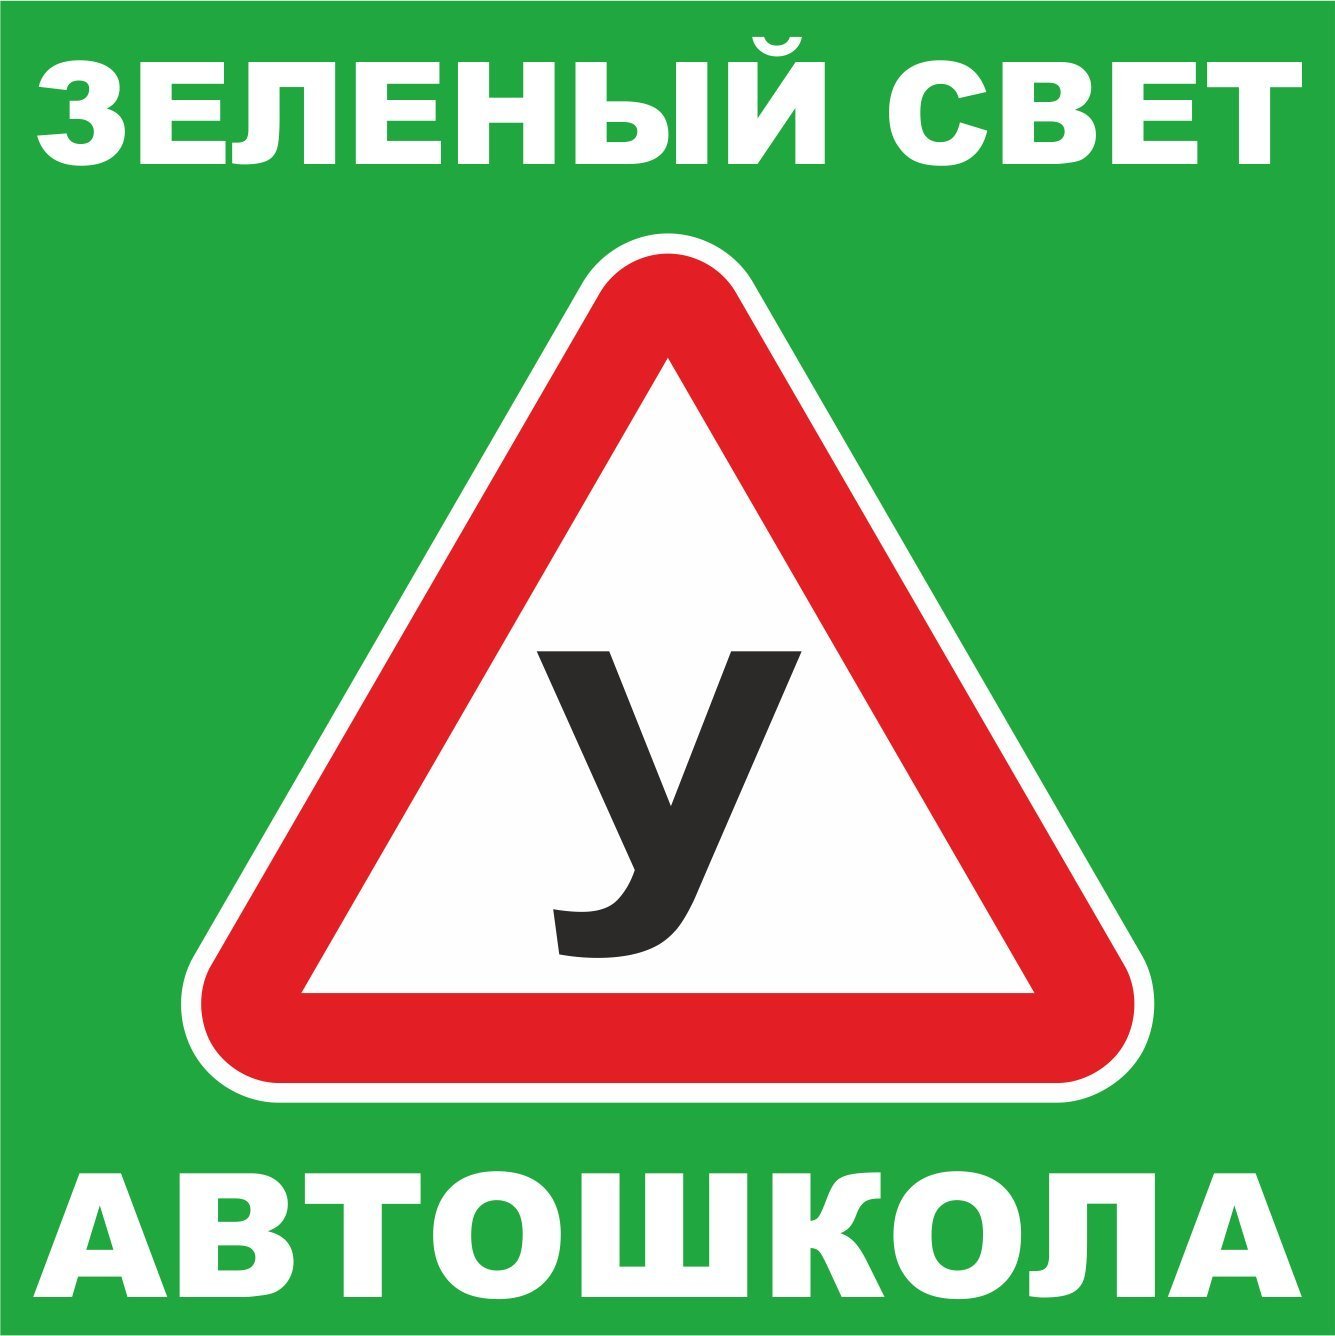 Автошкола зеленый свет логотип